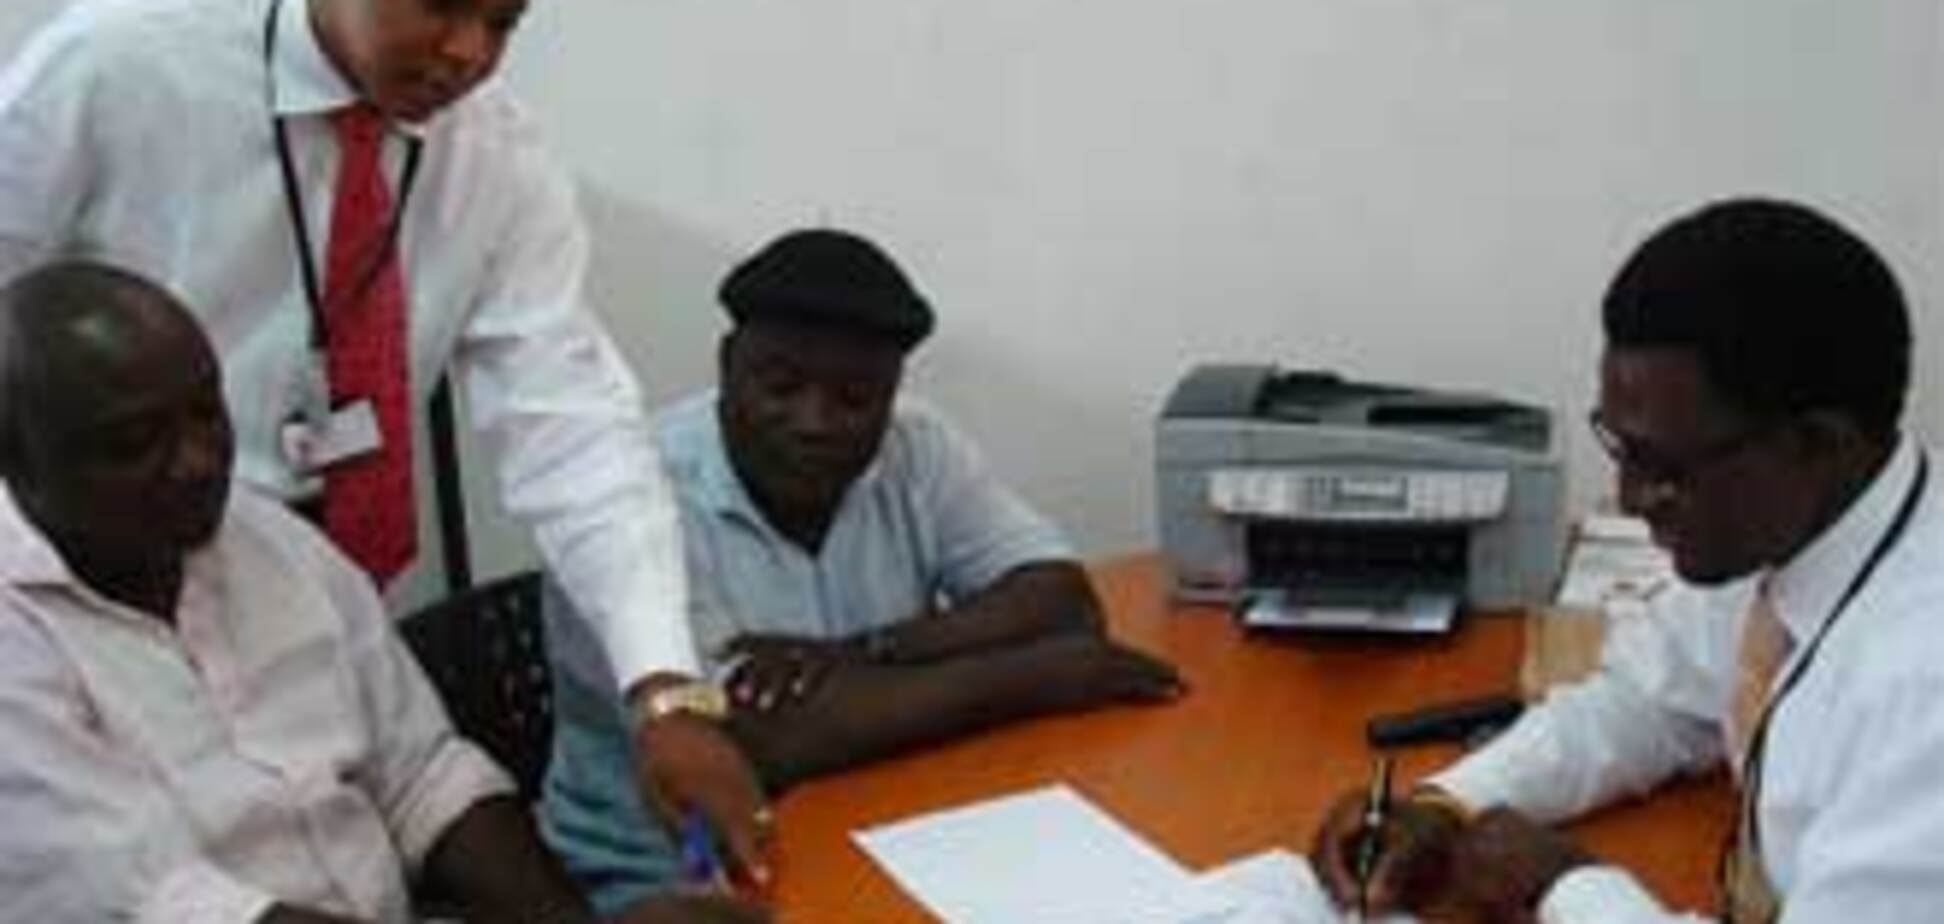 Пастор Аделаджа открыл свой банк в Нигерии